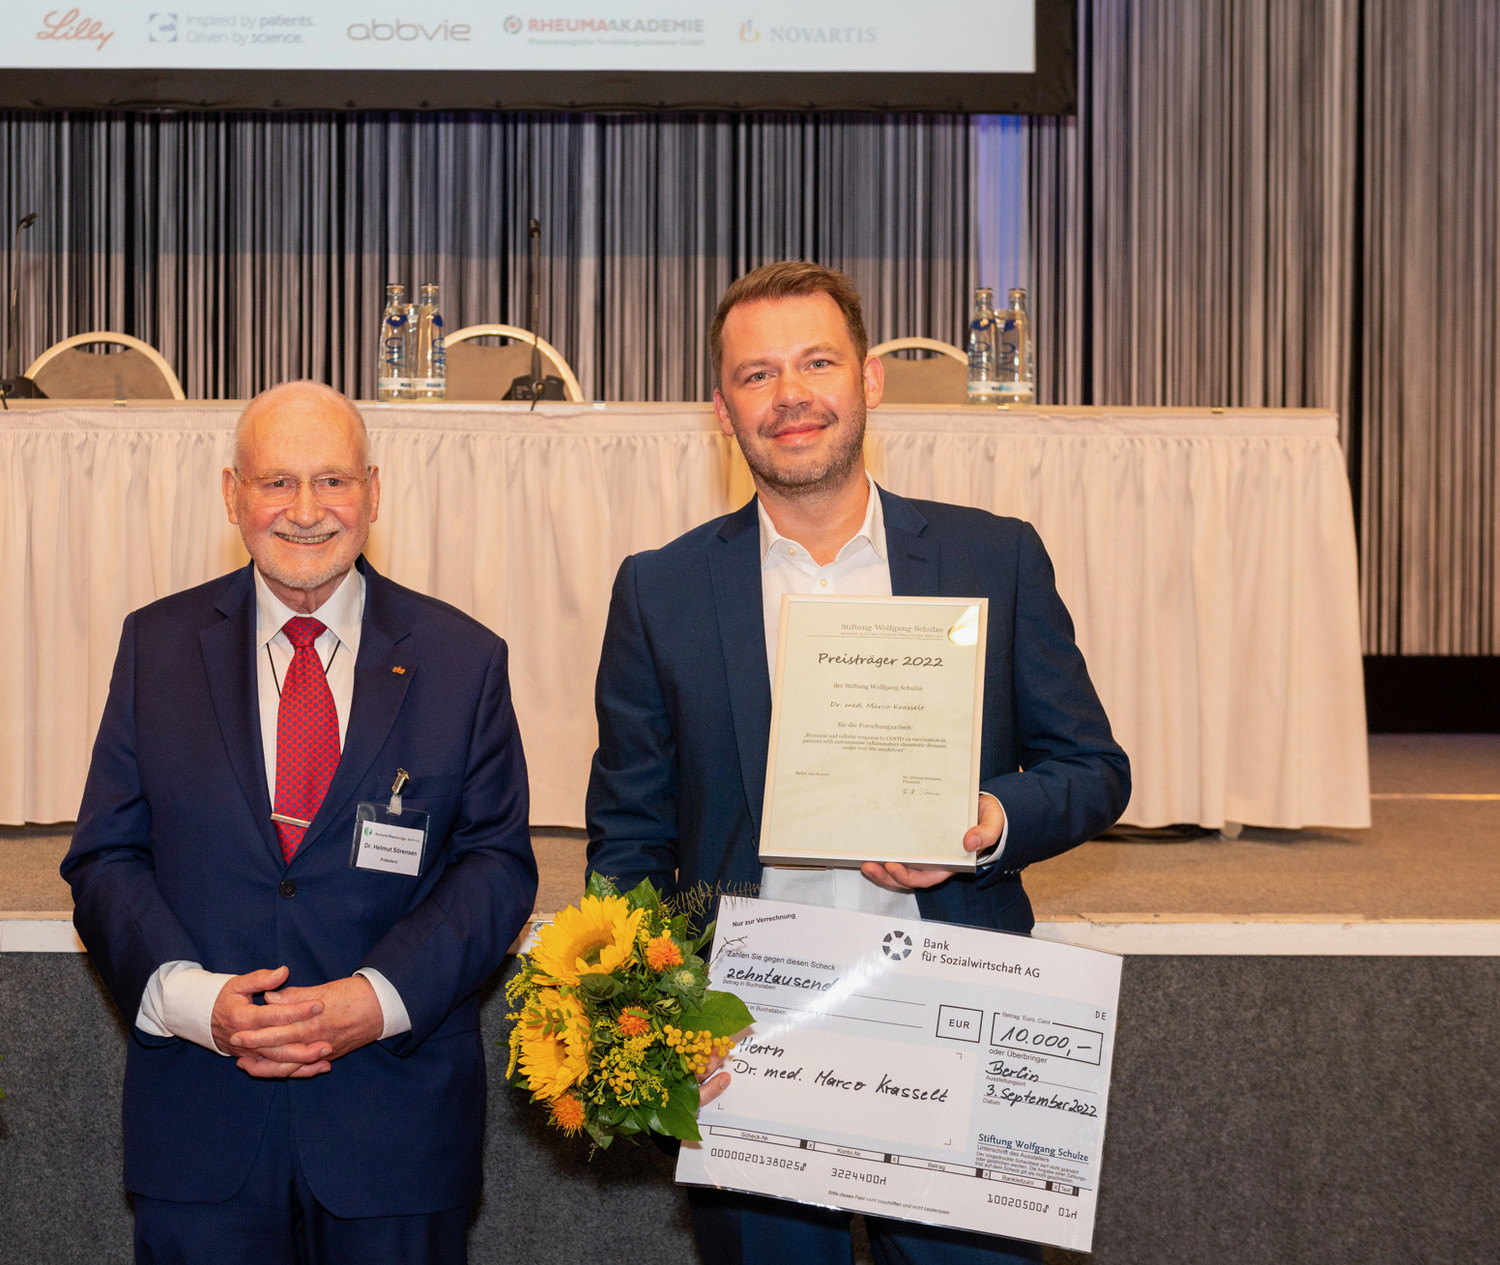 UKL-Rheumatologe Dr. Marco Krasselt (re.) ist Preisträger 2022 des Wolfgang-Schulze-Förderpreises. Überreicht wurde er von Dr. Helmut Sörensen, Rheumatologe und Landespräsident der Deutschen Rheuma-Liga in Berlin.